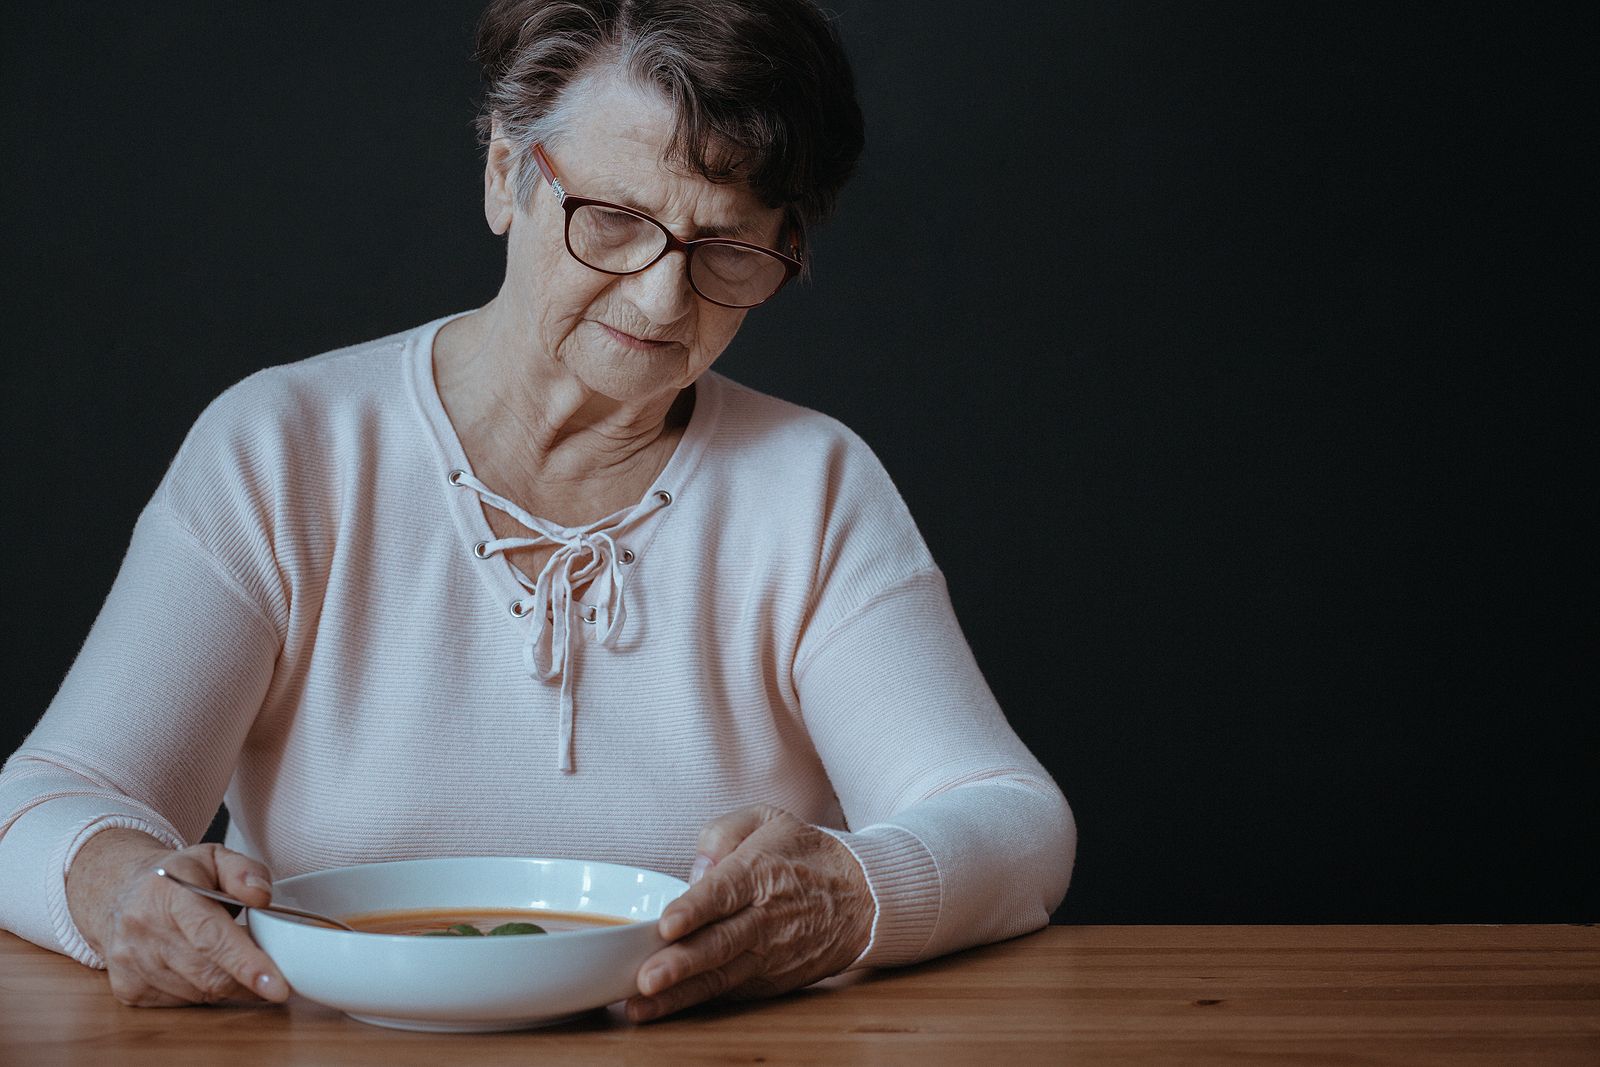 Así es la hiporexia, la pérdida de apetito que afecta a millones de personas mayores. Bigstock